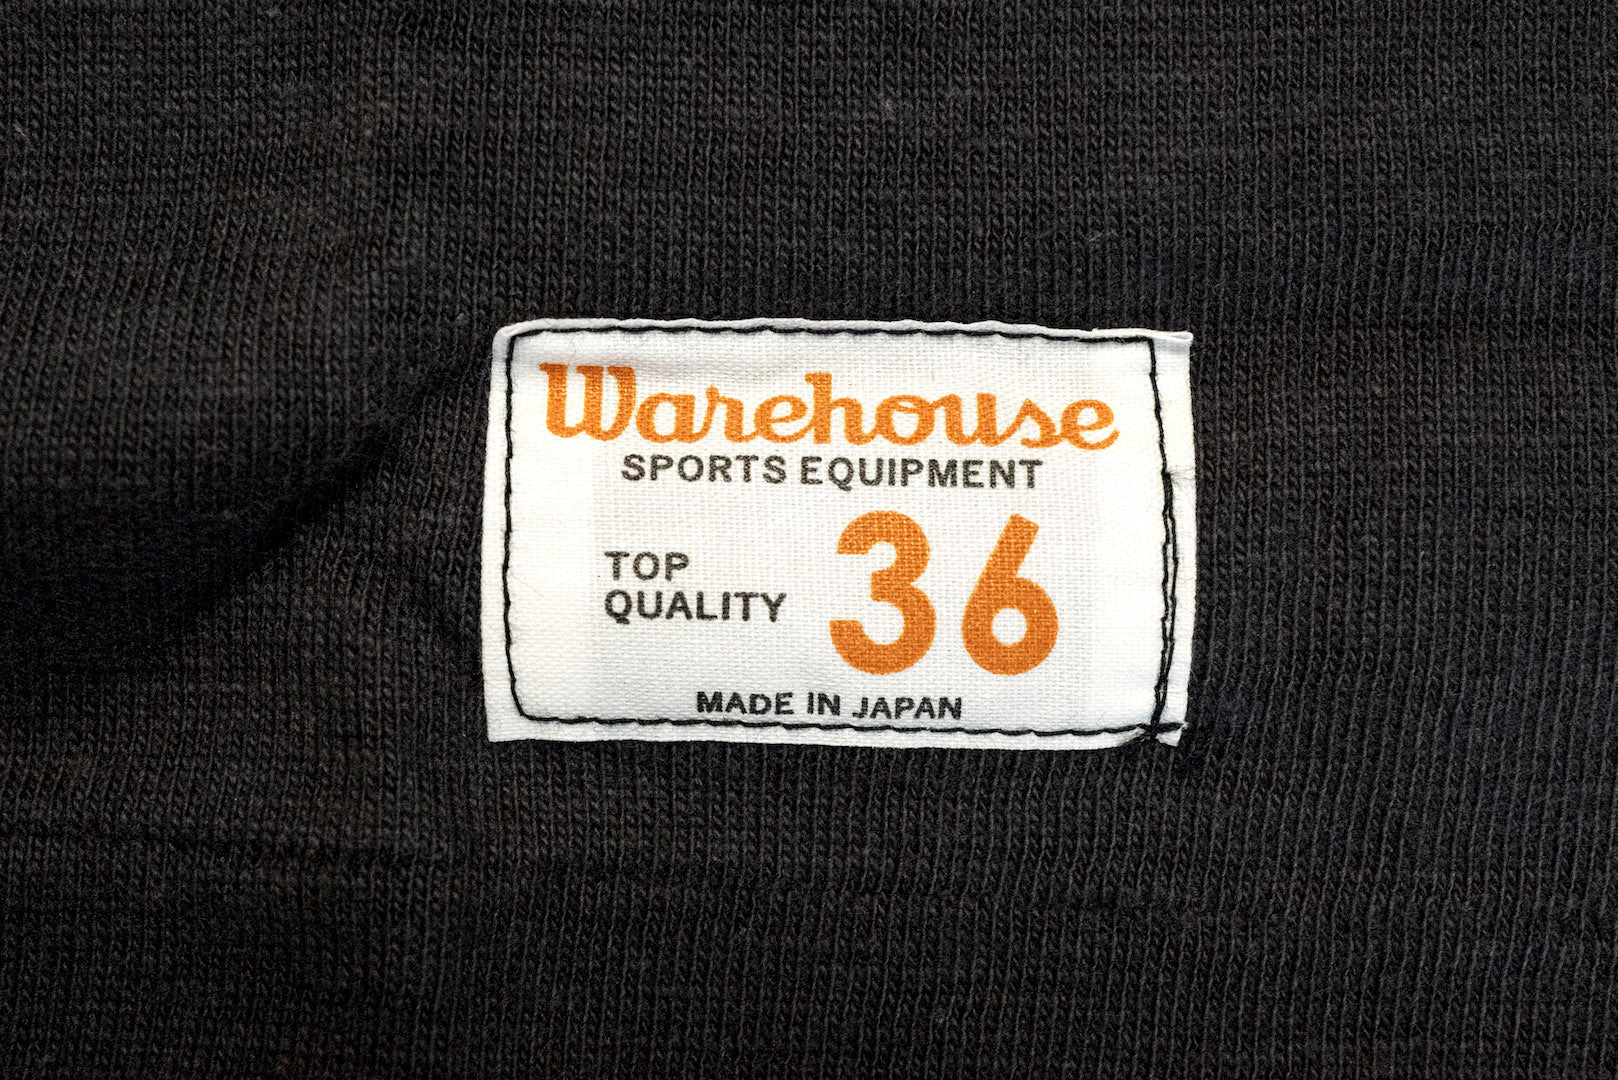 Warehouse "Bamboo Textured" 3/4 Sleeve Football Tee (Black)